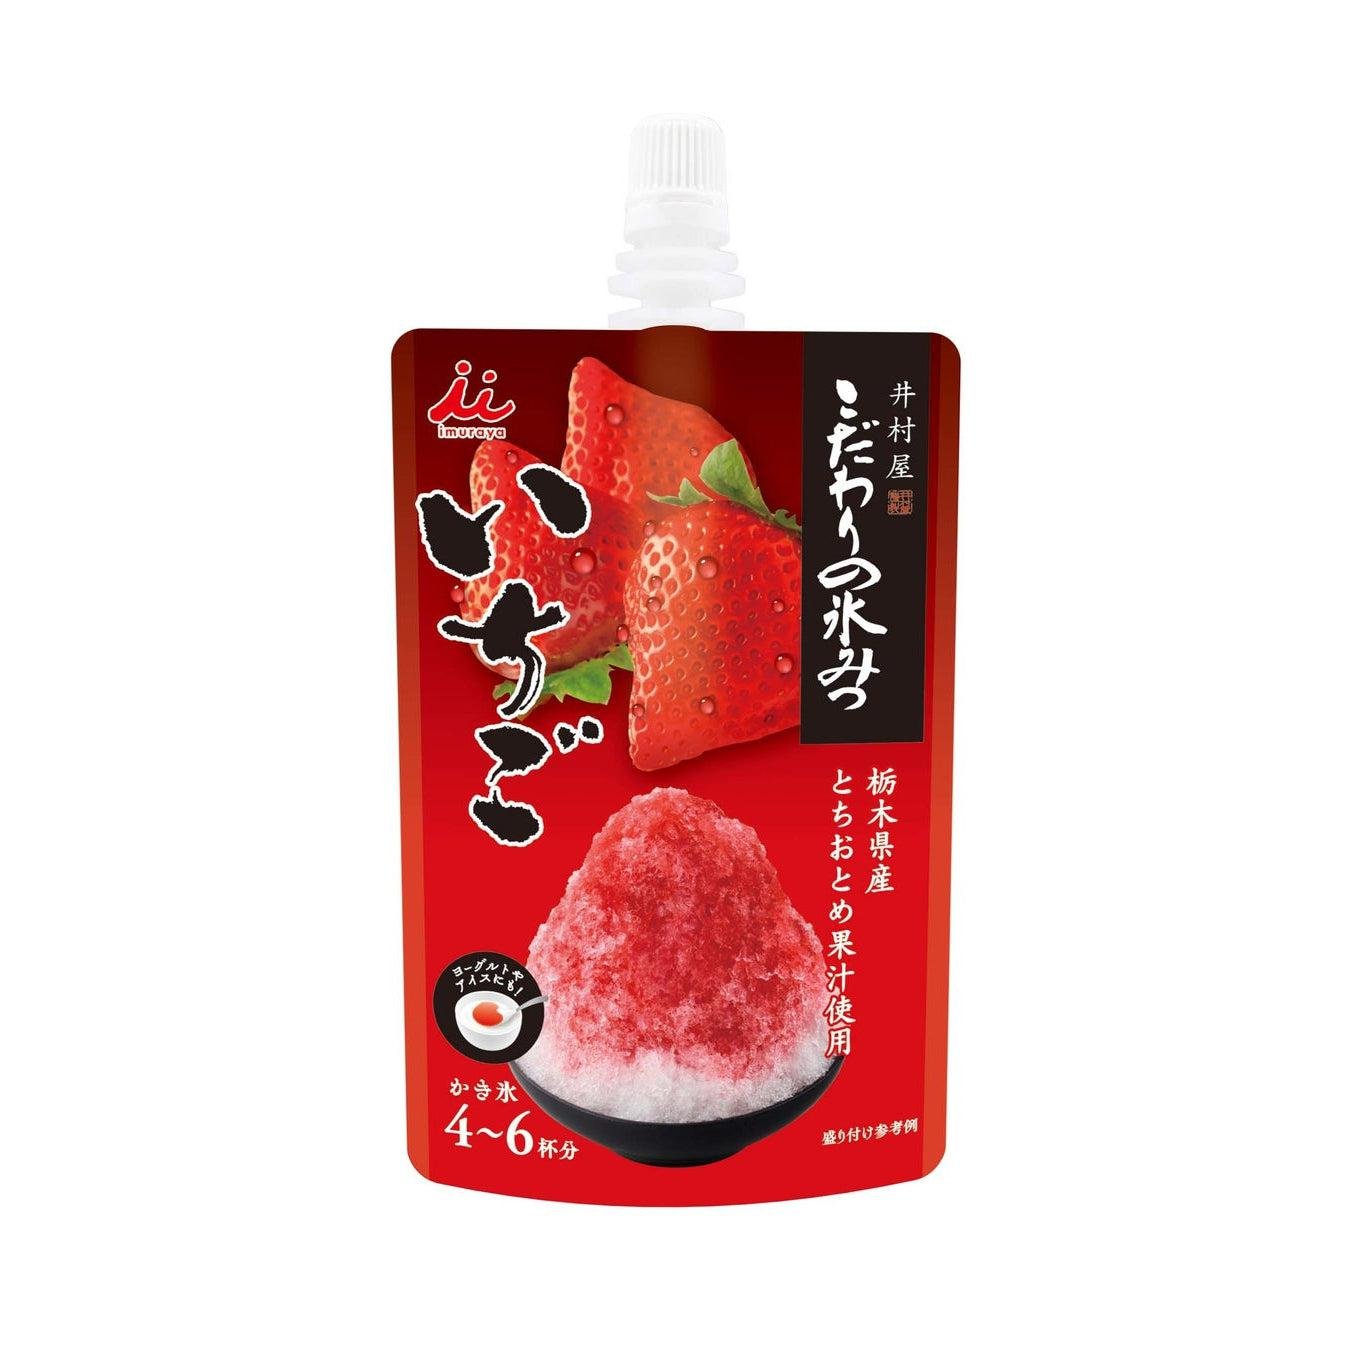 Imuraya Ichigo Kakigori Syrup Strawberry Shaved Ice Syrup 150g